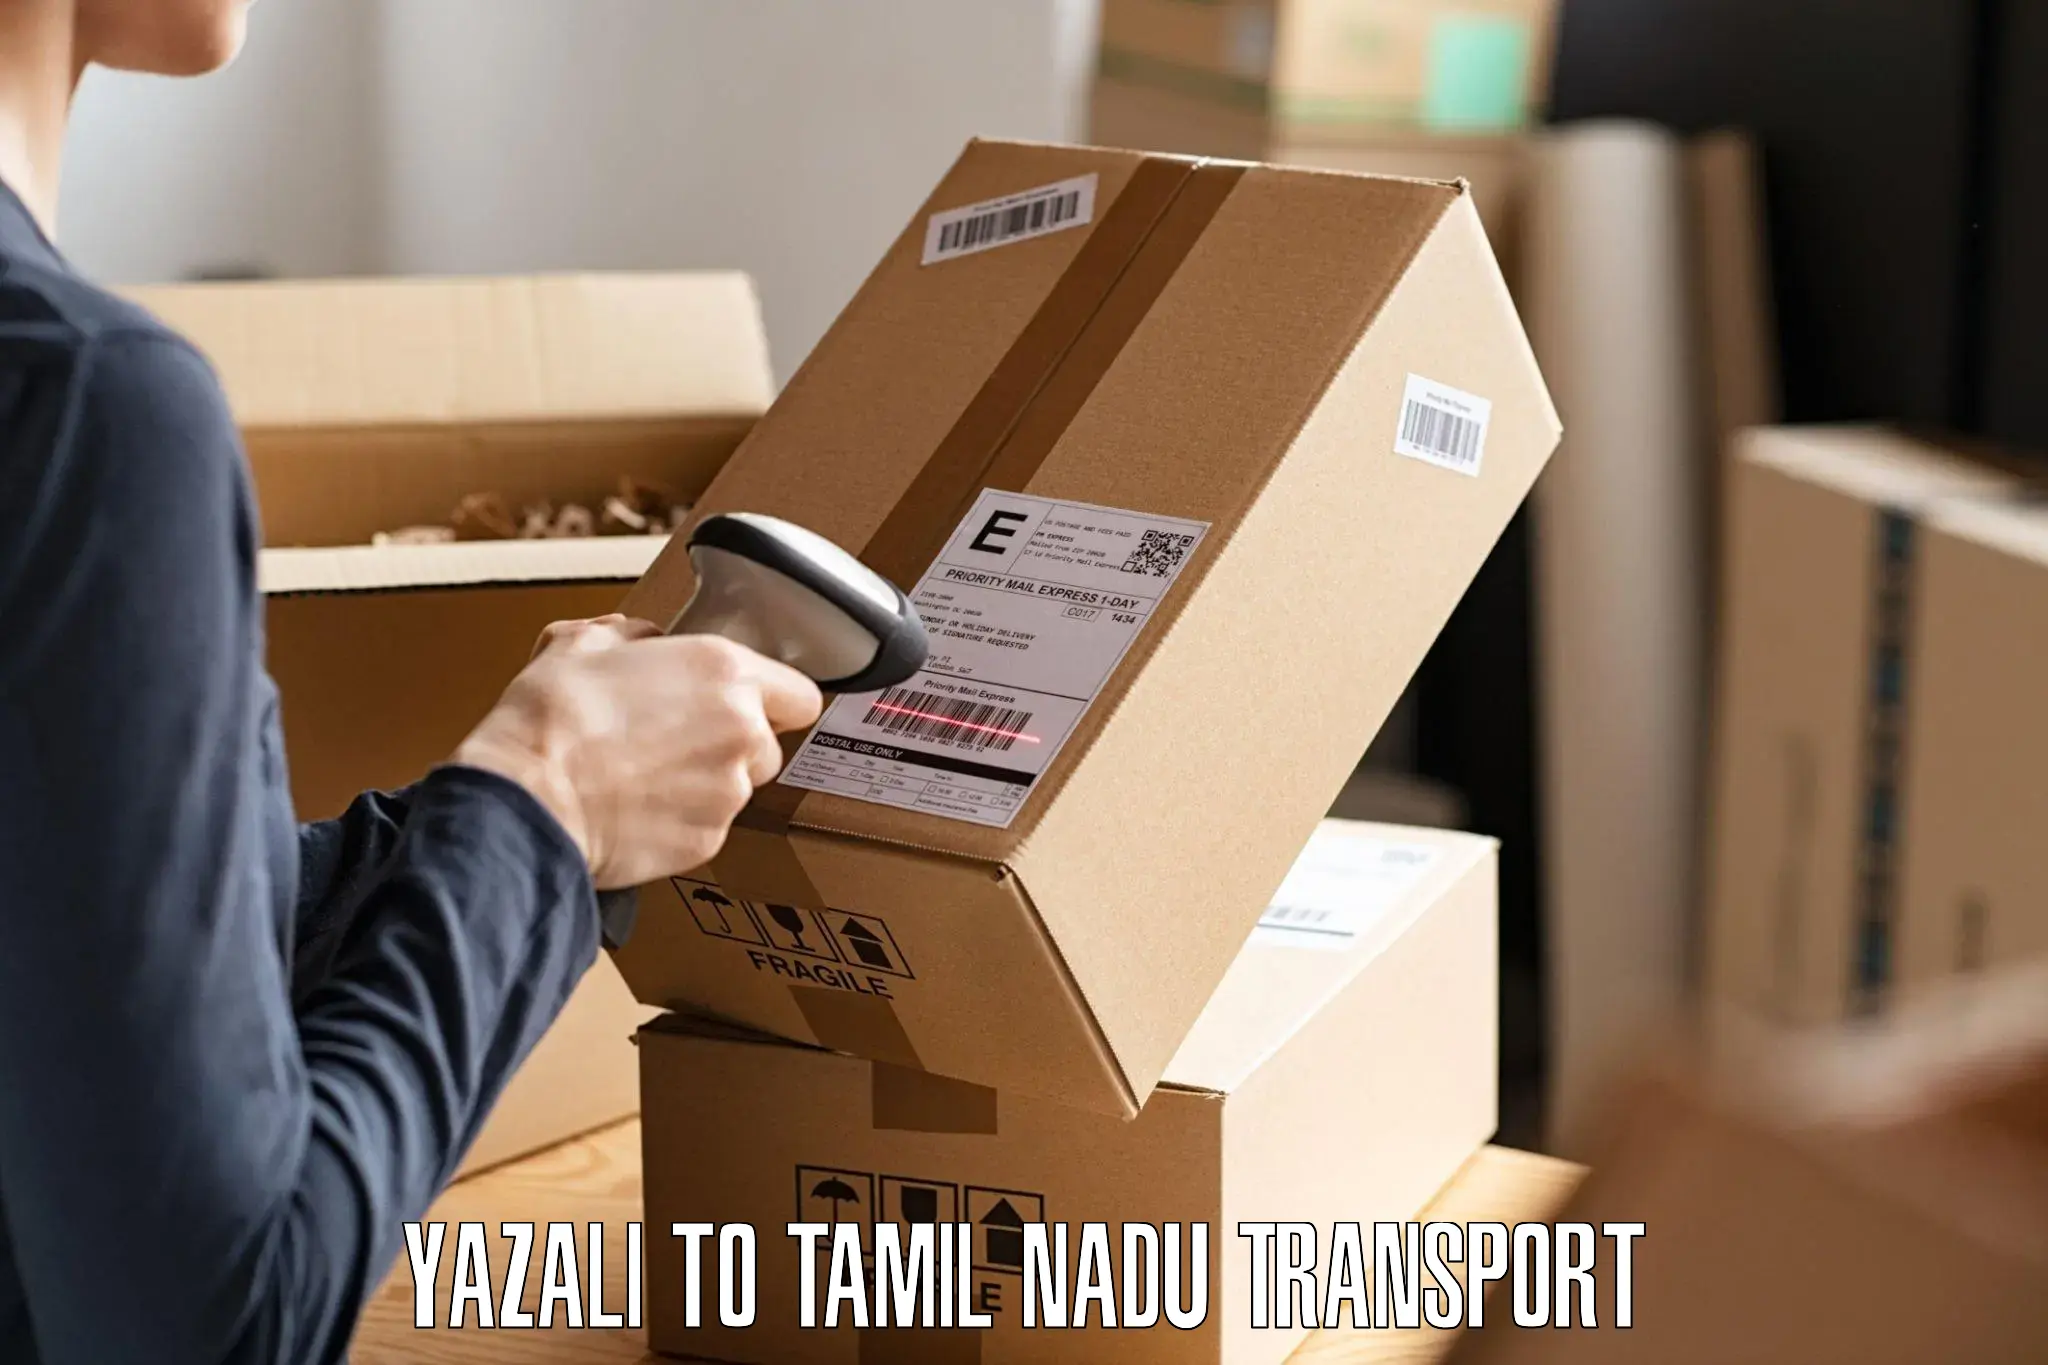 Daily transport service Yazali to Vilathikulam